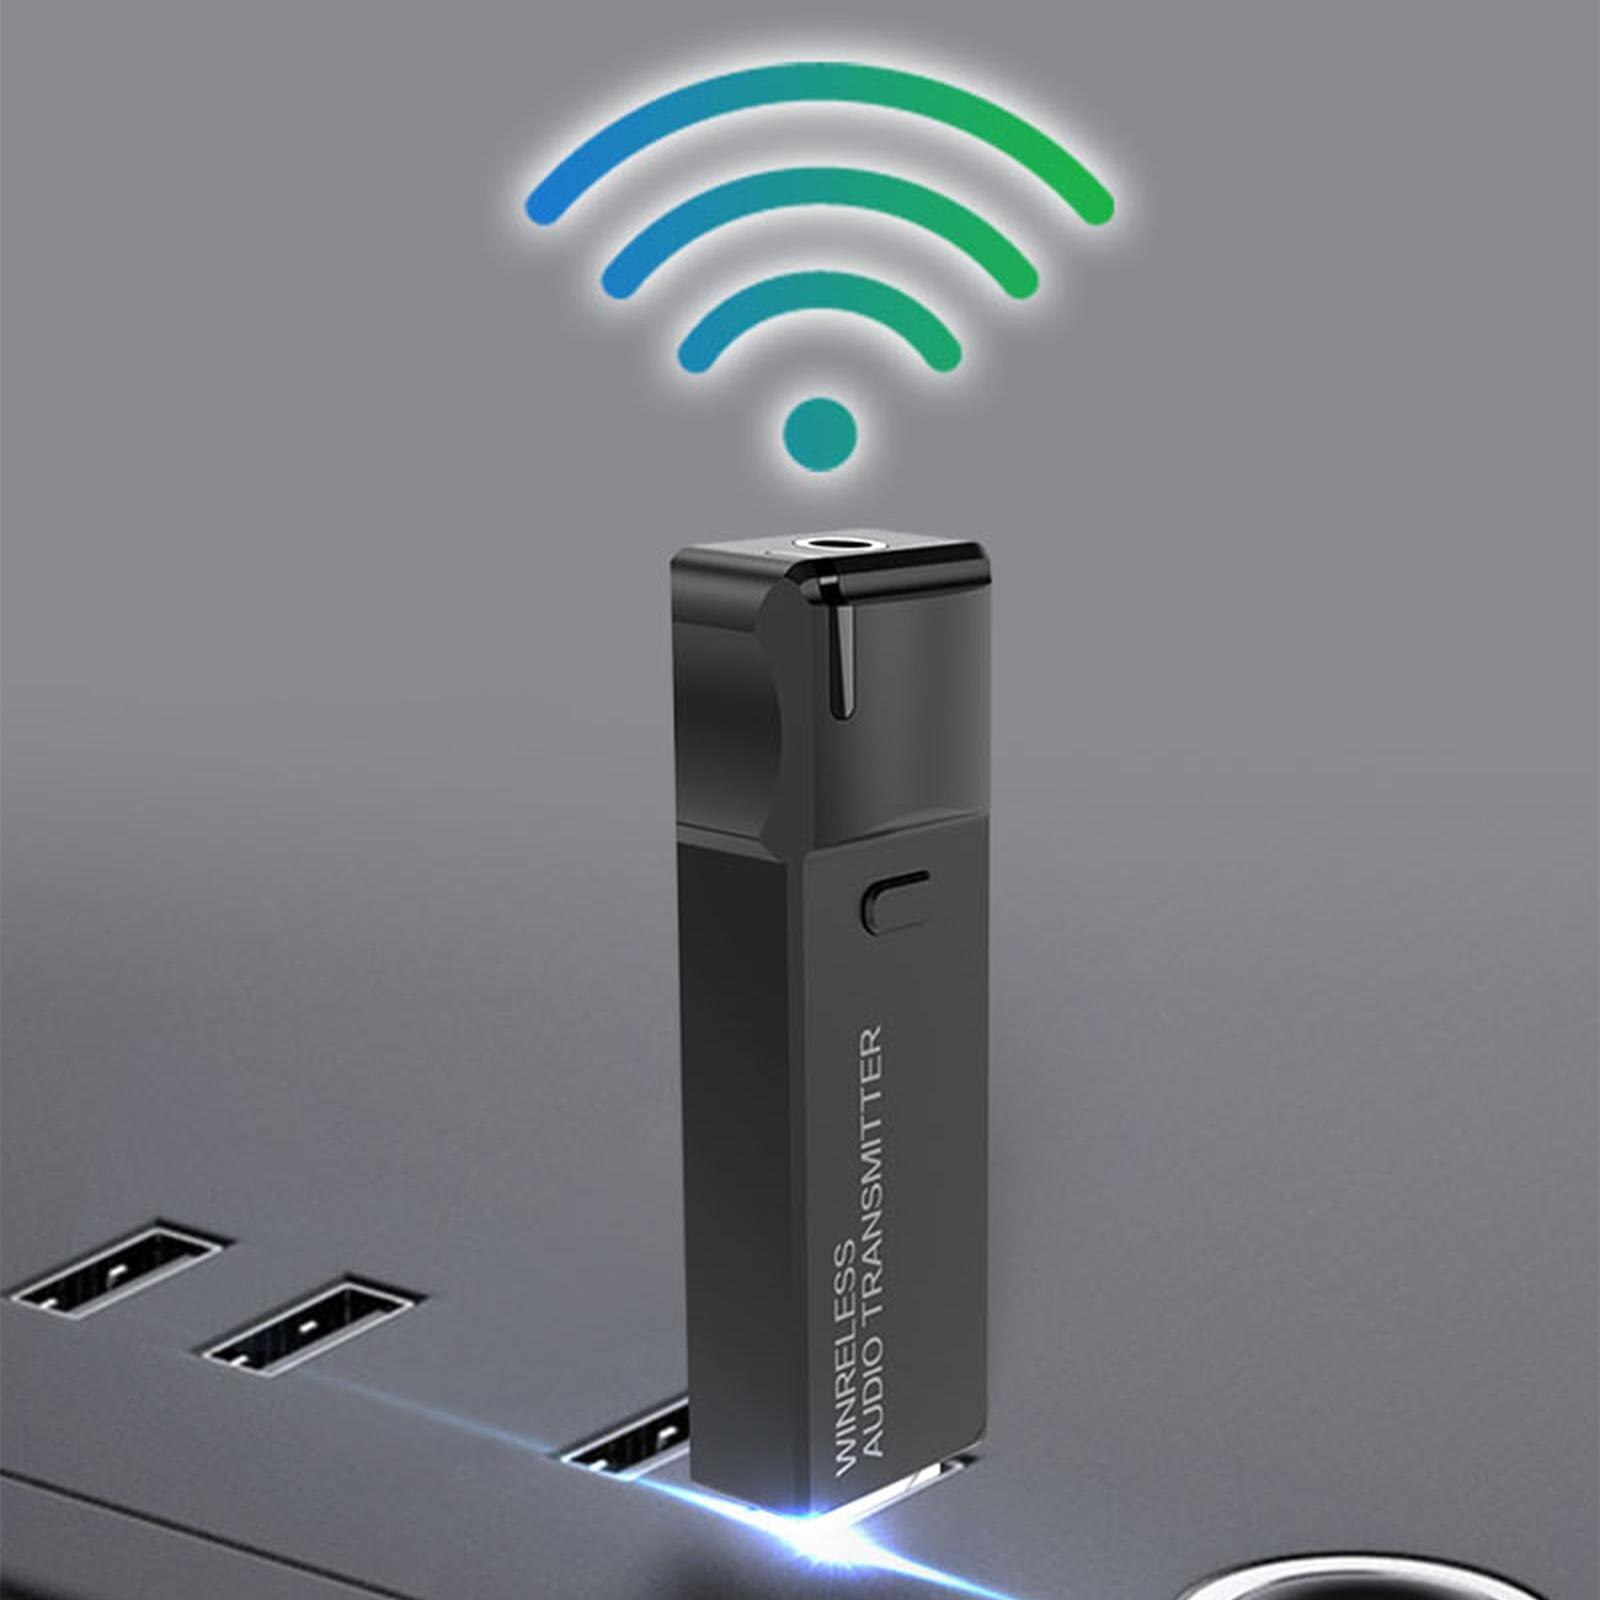 Bluetooth Zender 5.3 Usb Audio Adapter 3.5Mm Aux Stereo Jack Voor Hoofdtelefoon Luidspreker Voor Tv Pc Auto Aux Hoofdtelefoon ontvangen